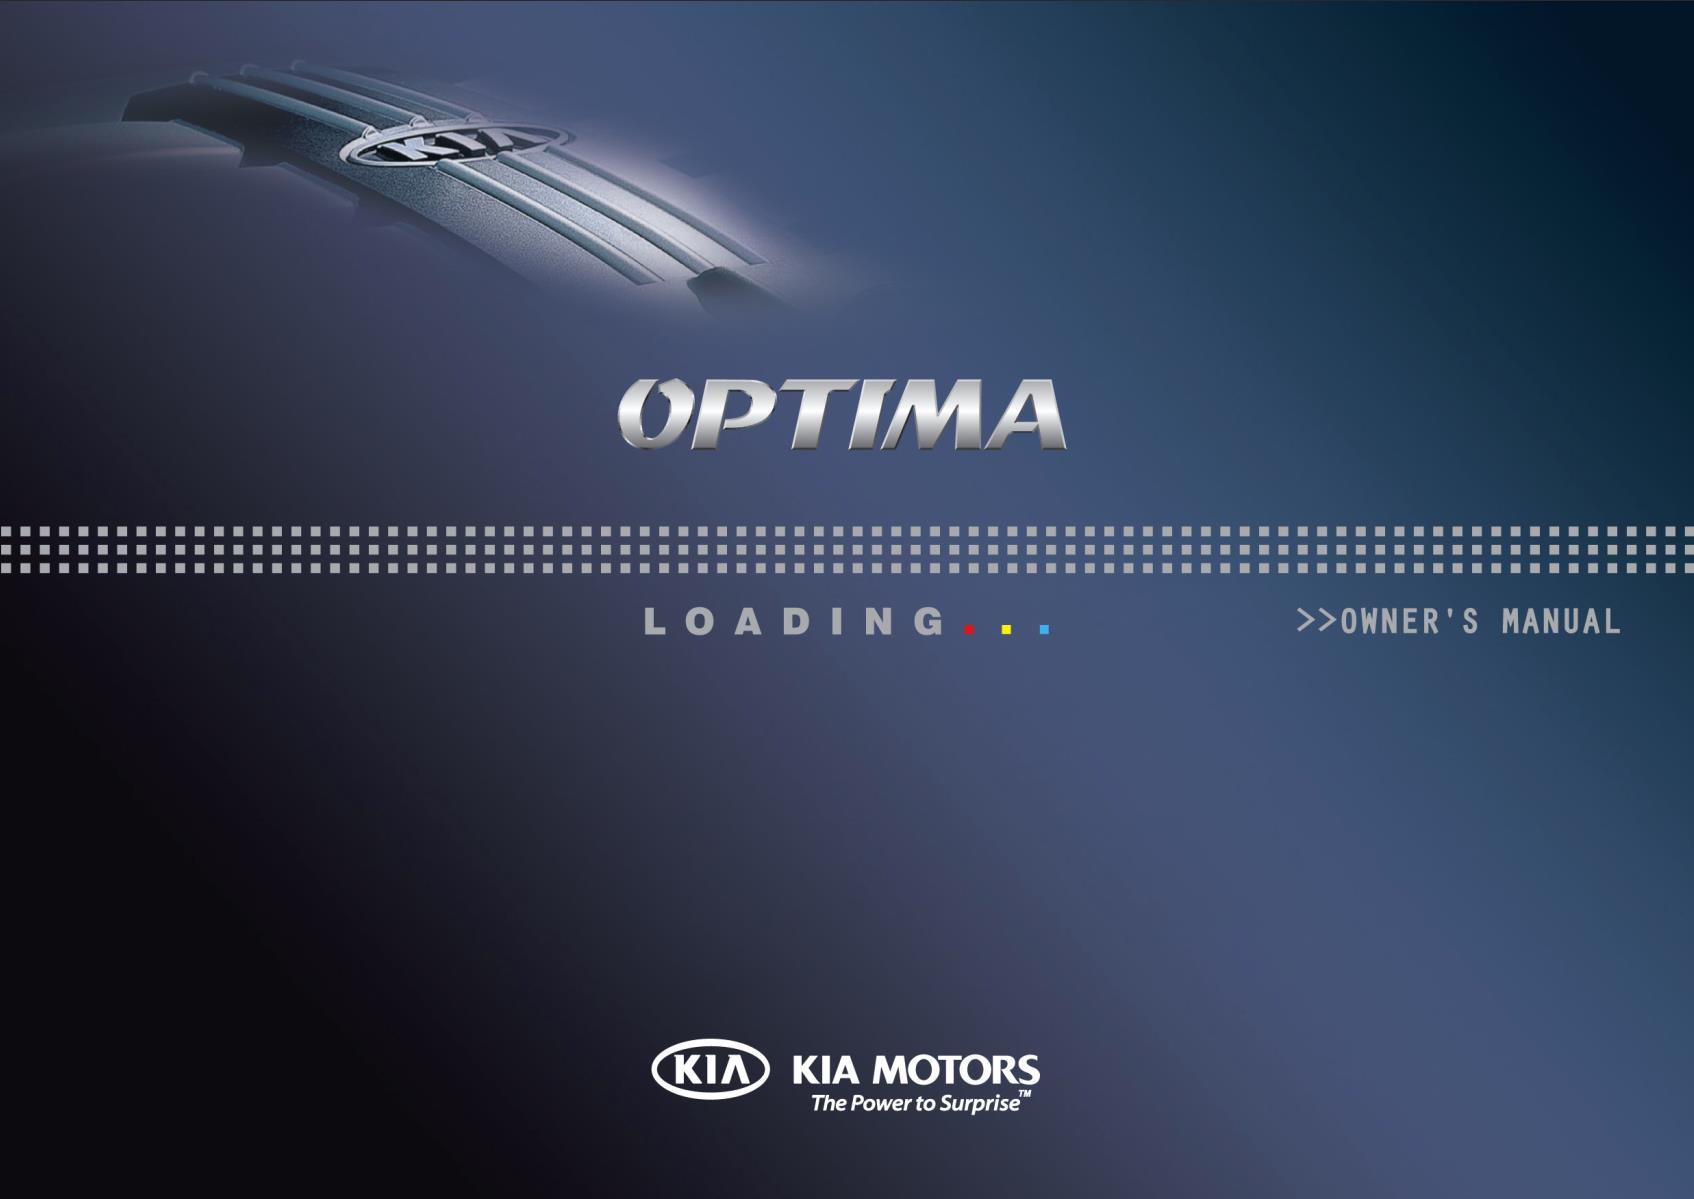 KIA Optima 2014 Owner's Manual – PDF Download